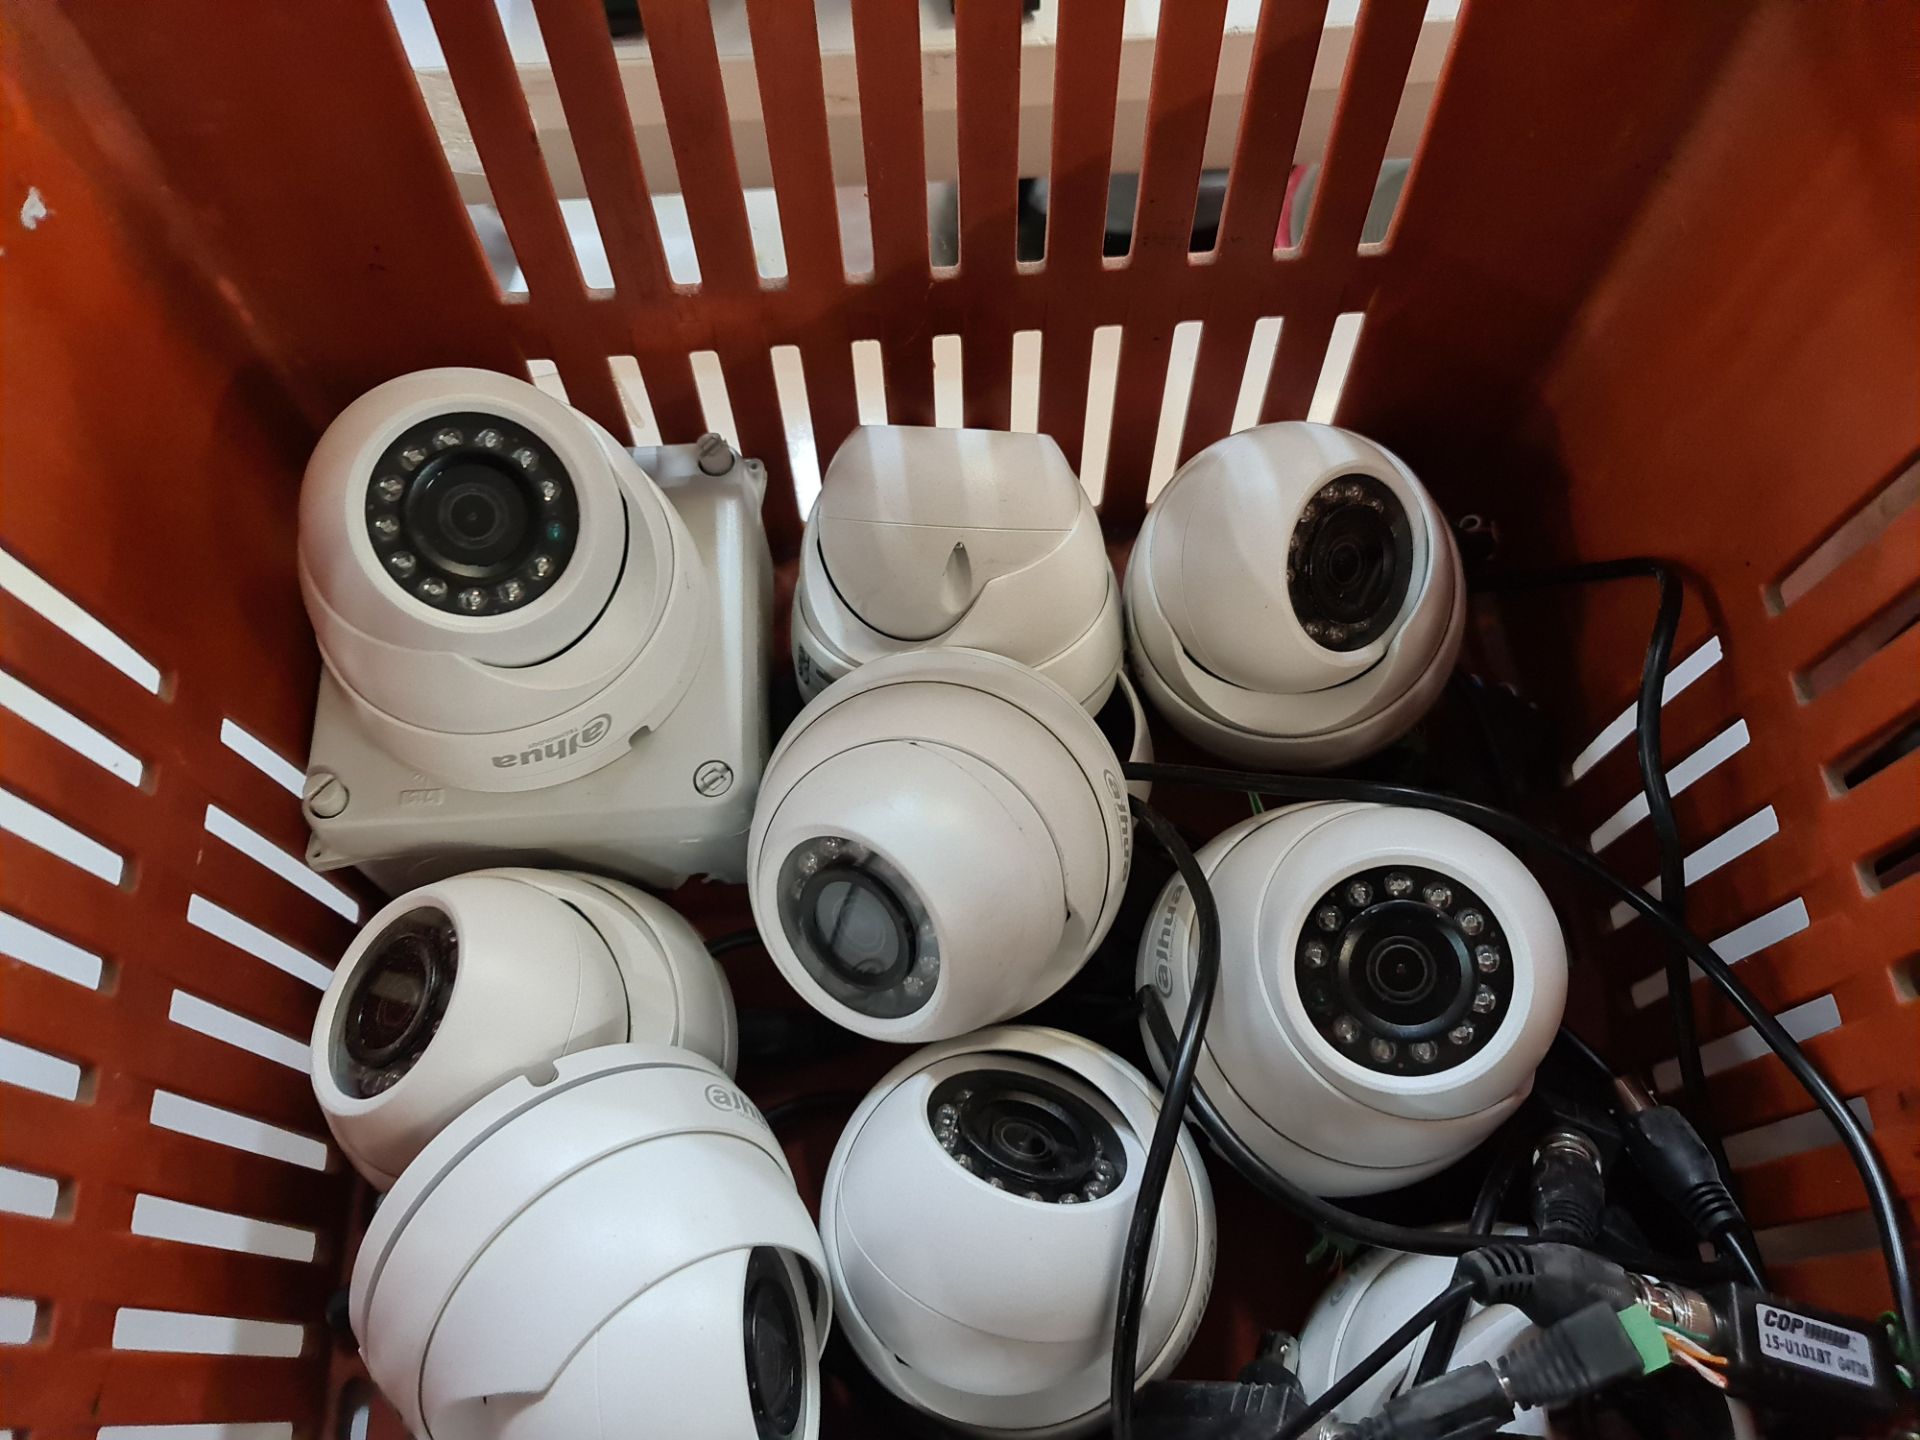 19 off Alhua CCTV cameras - Image 4 of 4